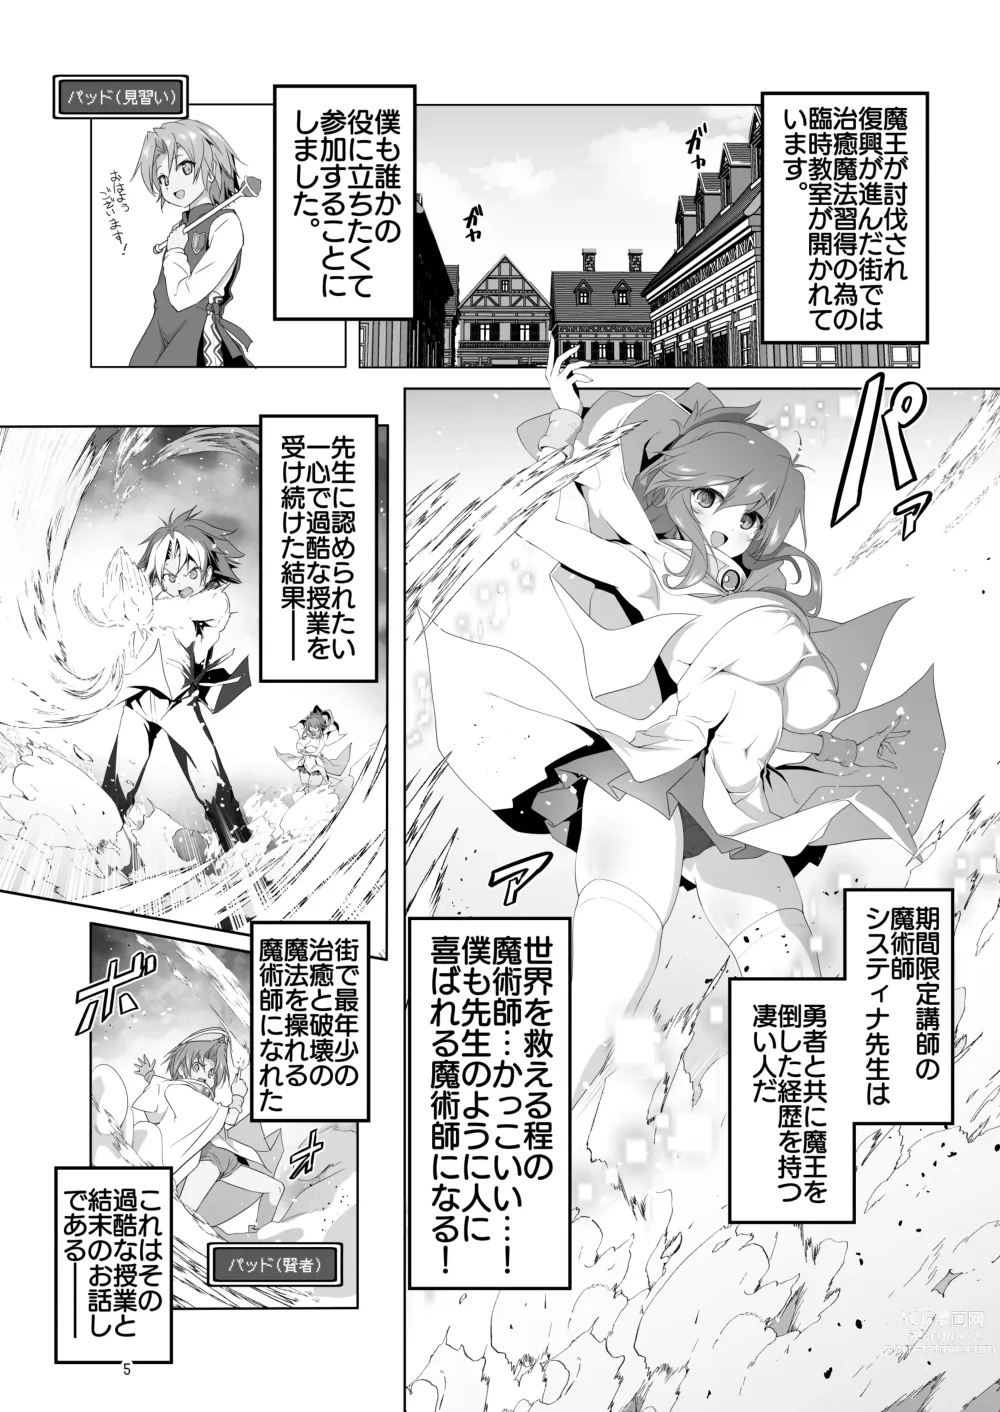 Page 5 of doujinshi Makotoni Zannen desu ga Bouken no Sho 9 wa Kiete Shimaimashita.